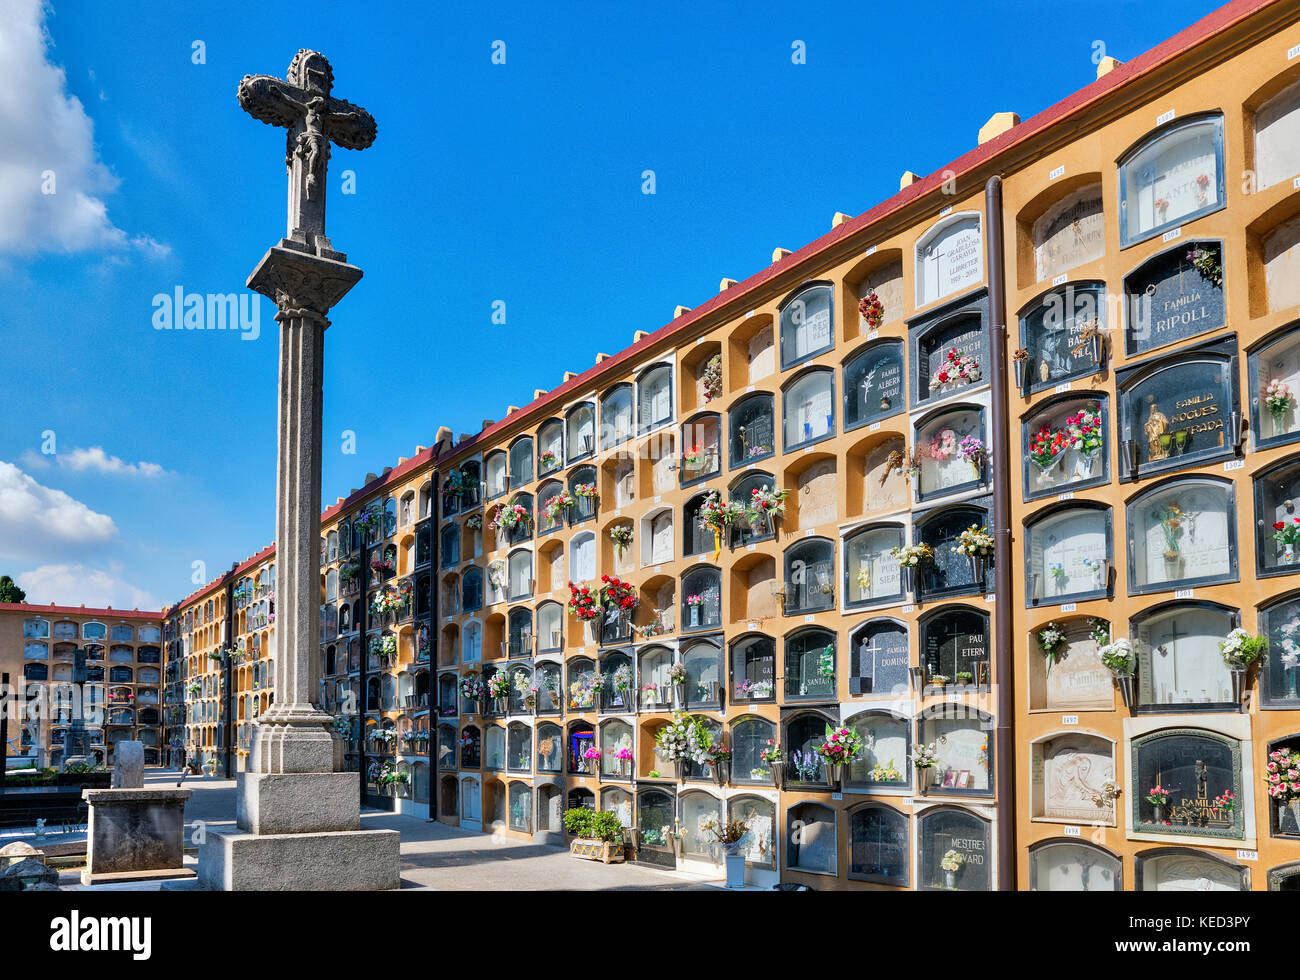 Cementeri Les Corts, Barcelona, Catalonia, Spain. Stock Photo